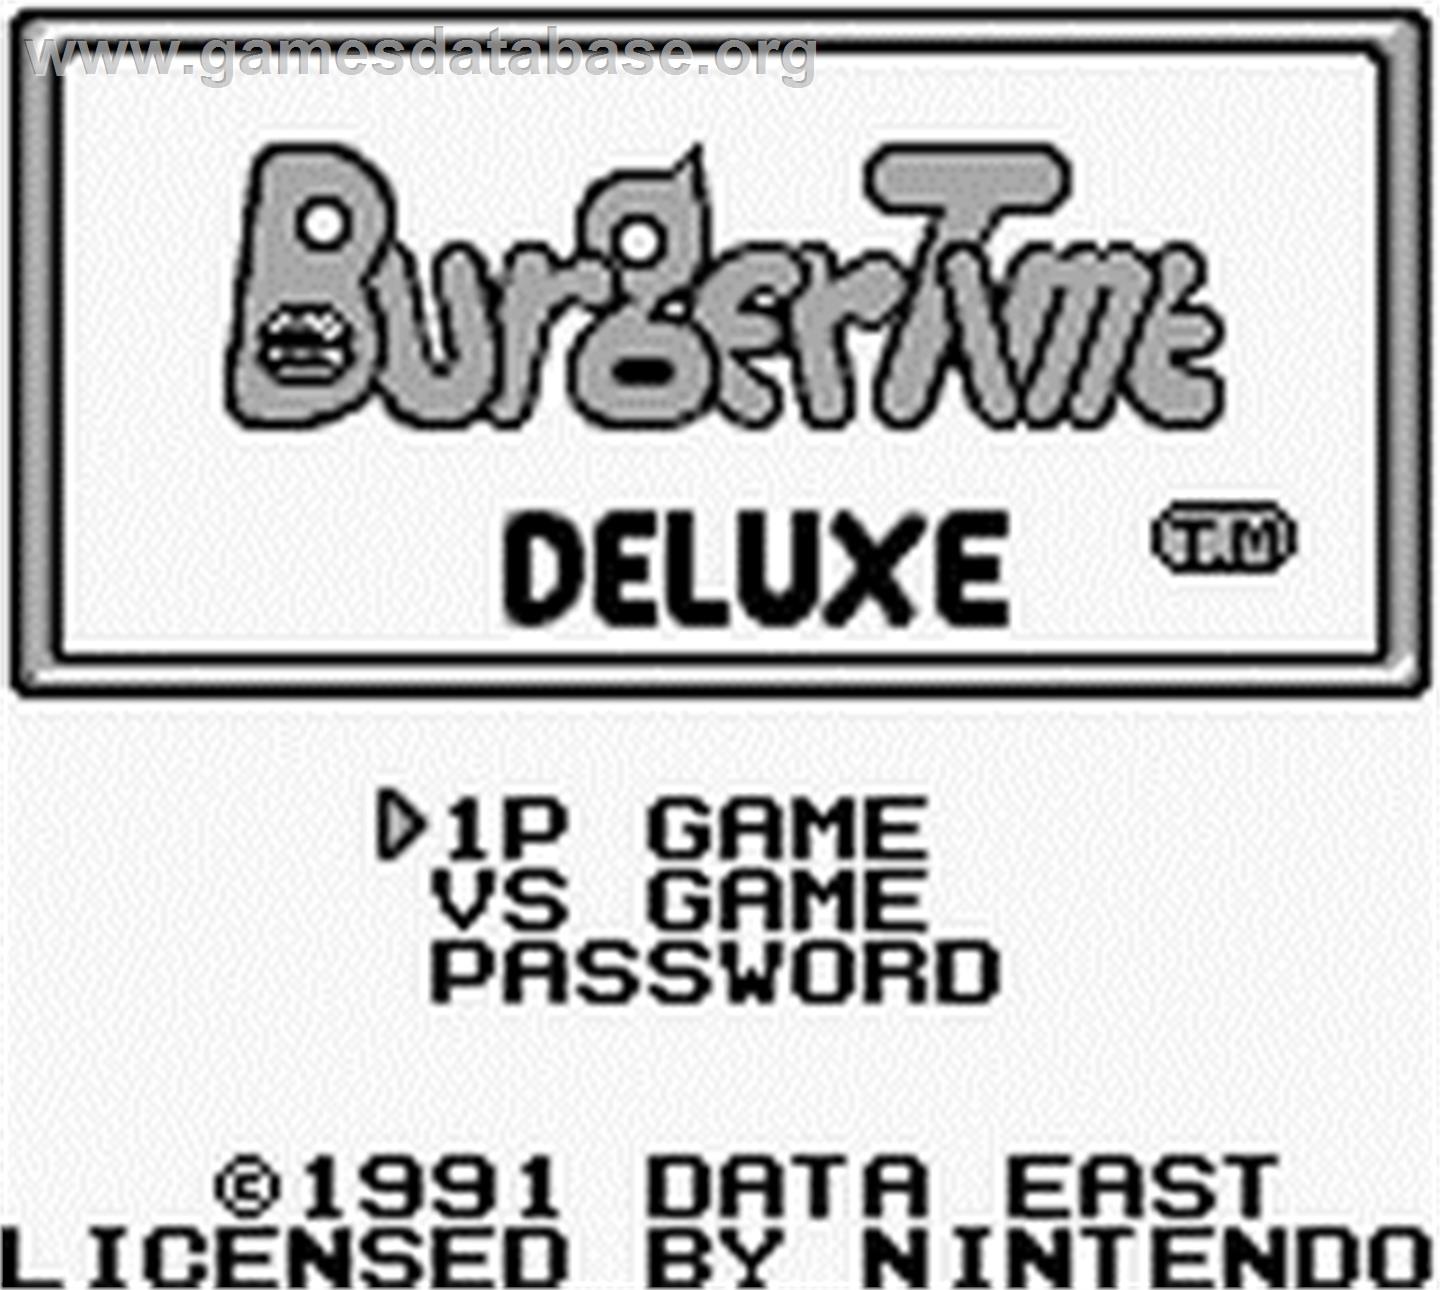 BurgerTime Deluxe - Nintendo Game Boy - Artwork - Title Screen